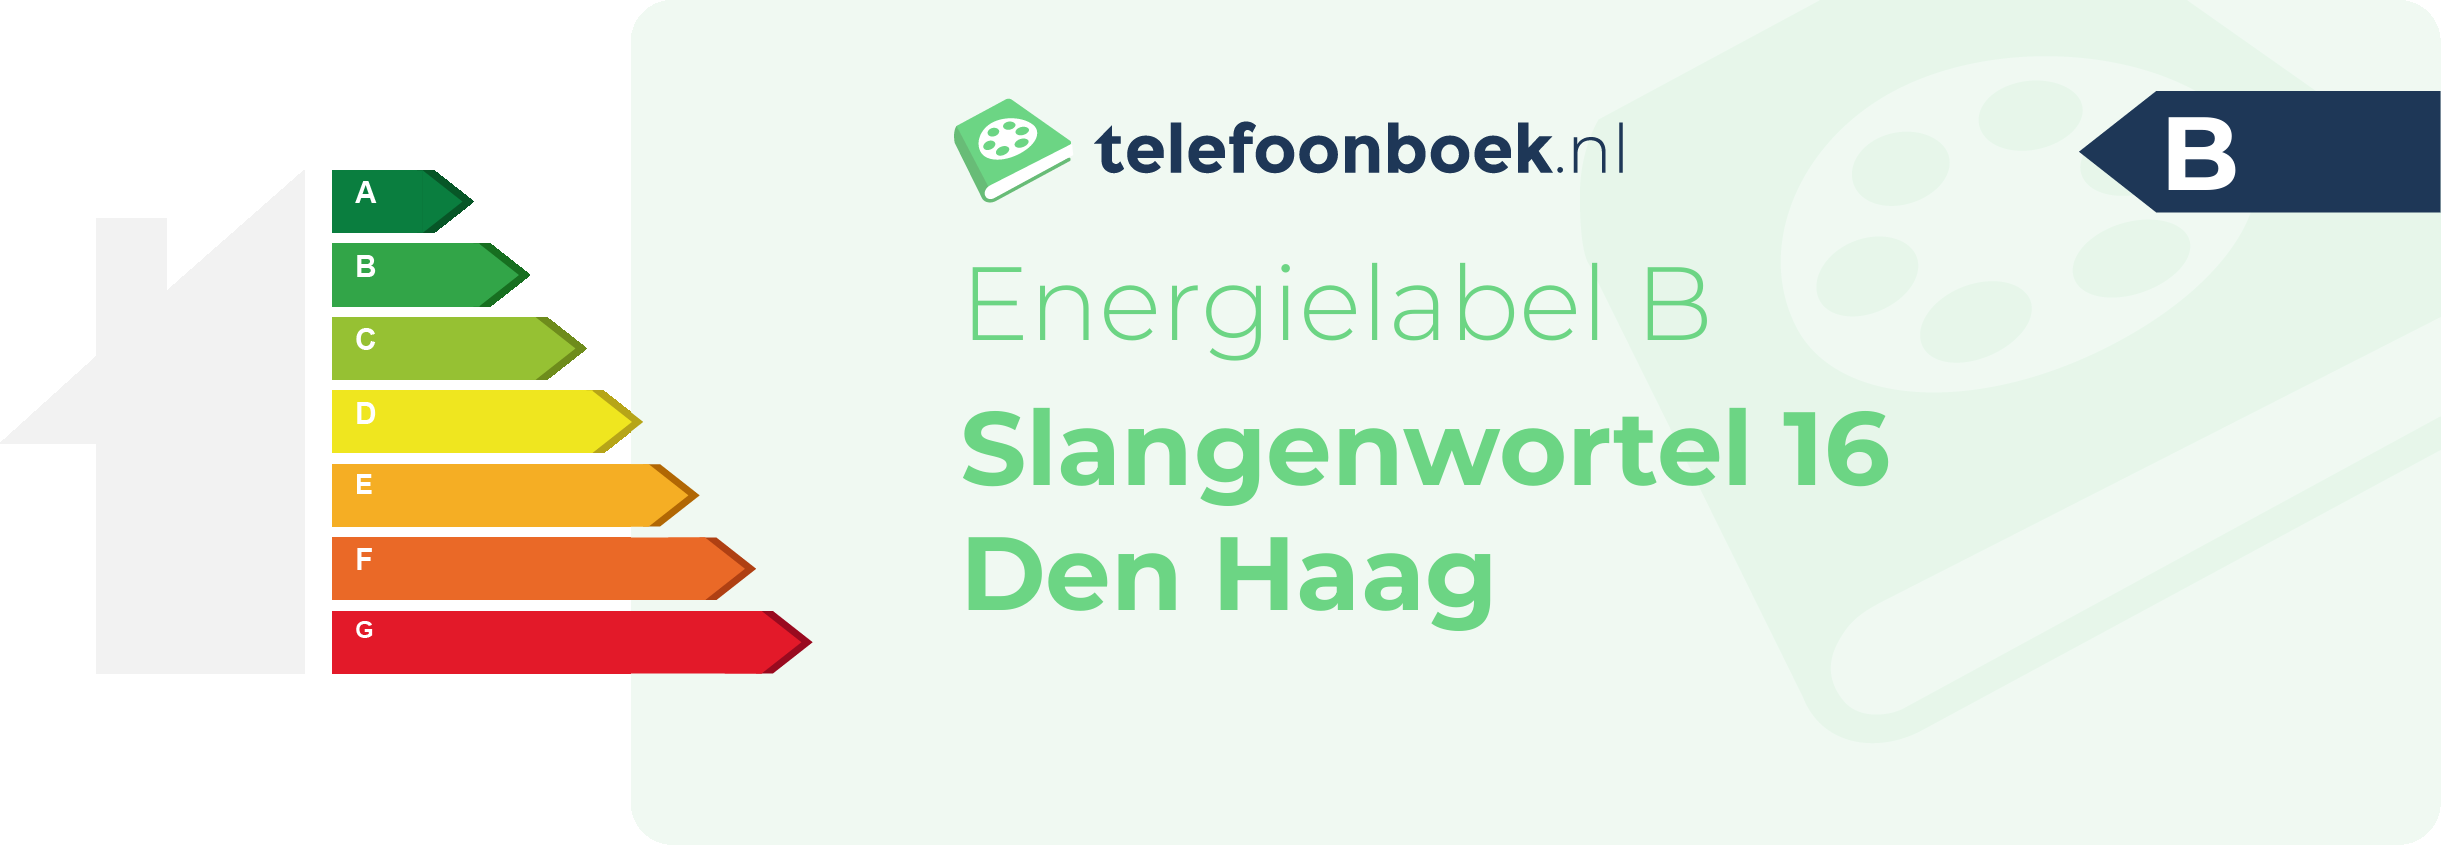 Energielabel Slangenwortel 16 Den Haag